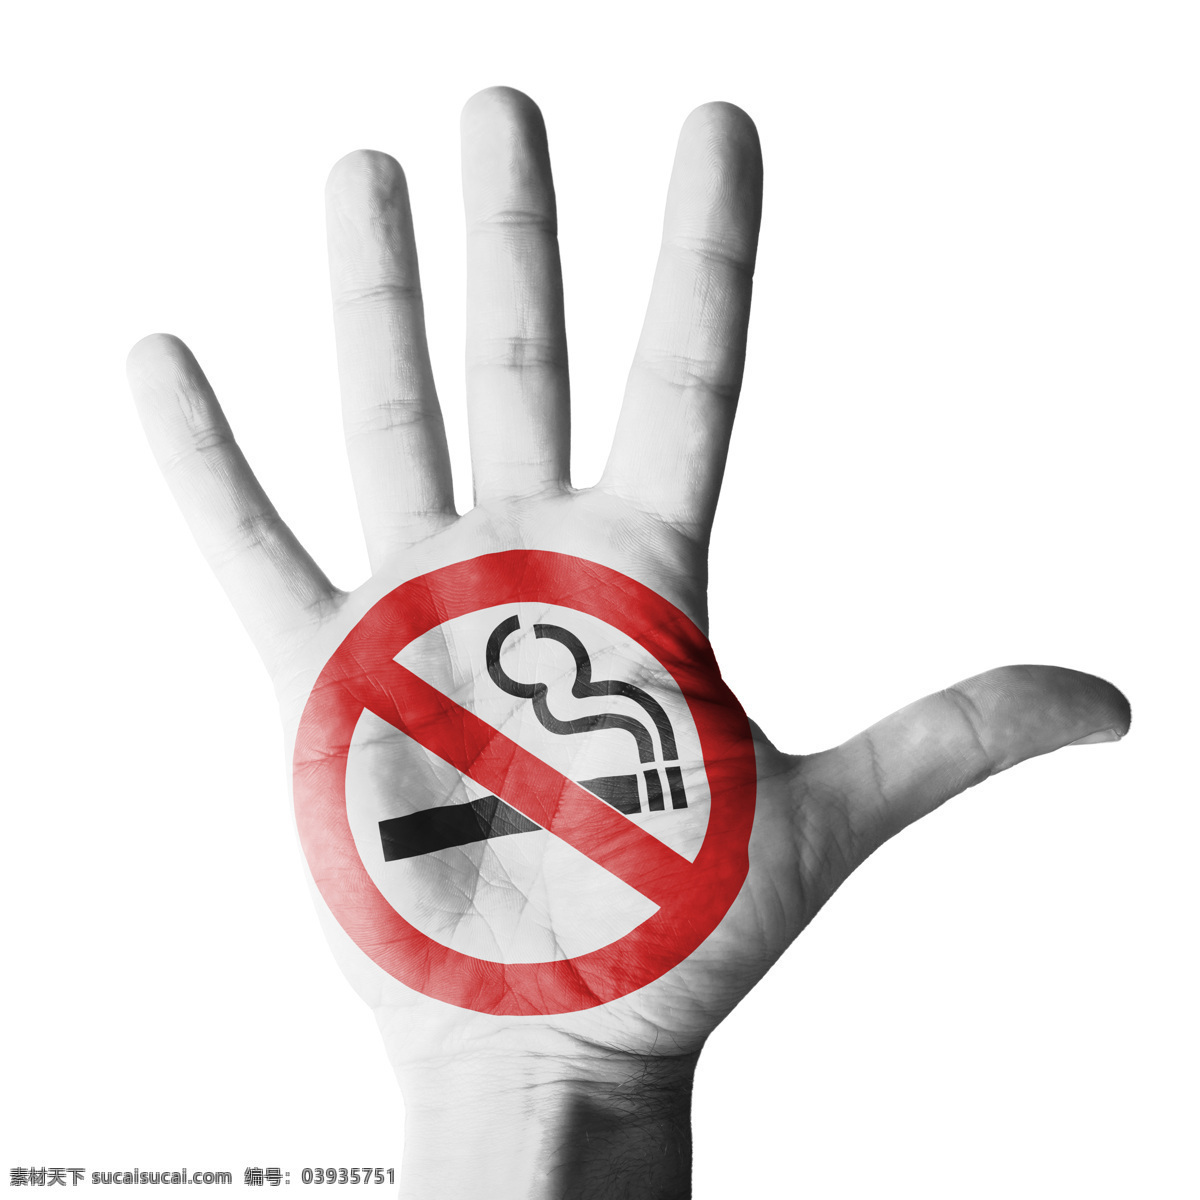 禁烟 标识 手势 香烟 手掌 禁烟标识 禁止吸烟 吸烟有害健康 禁烟公益广告 其他类别 生活百科